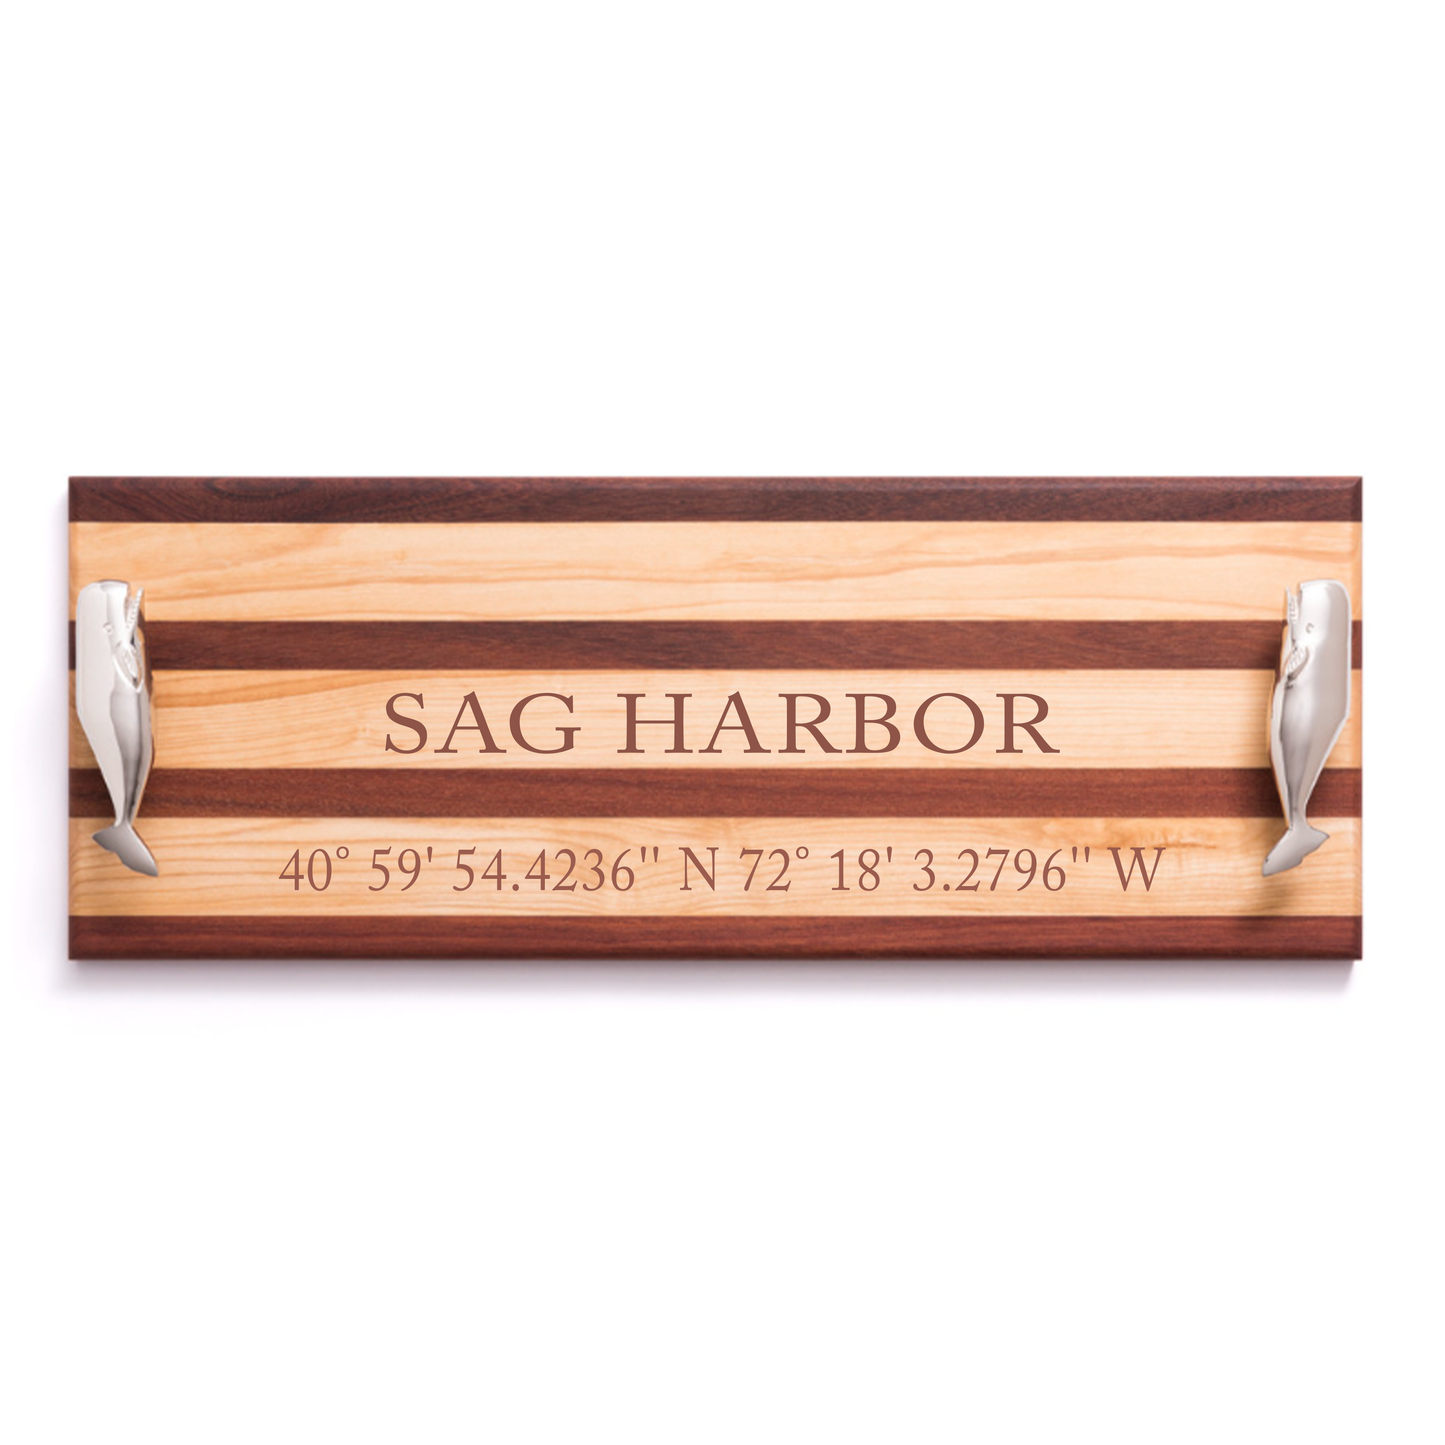 Sag Harbor Serving Board